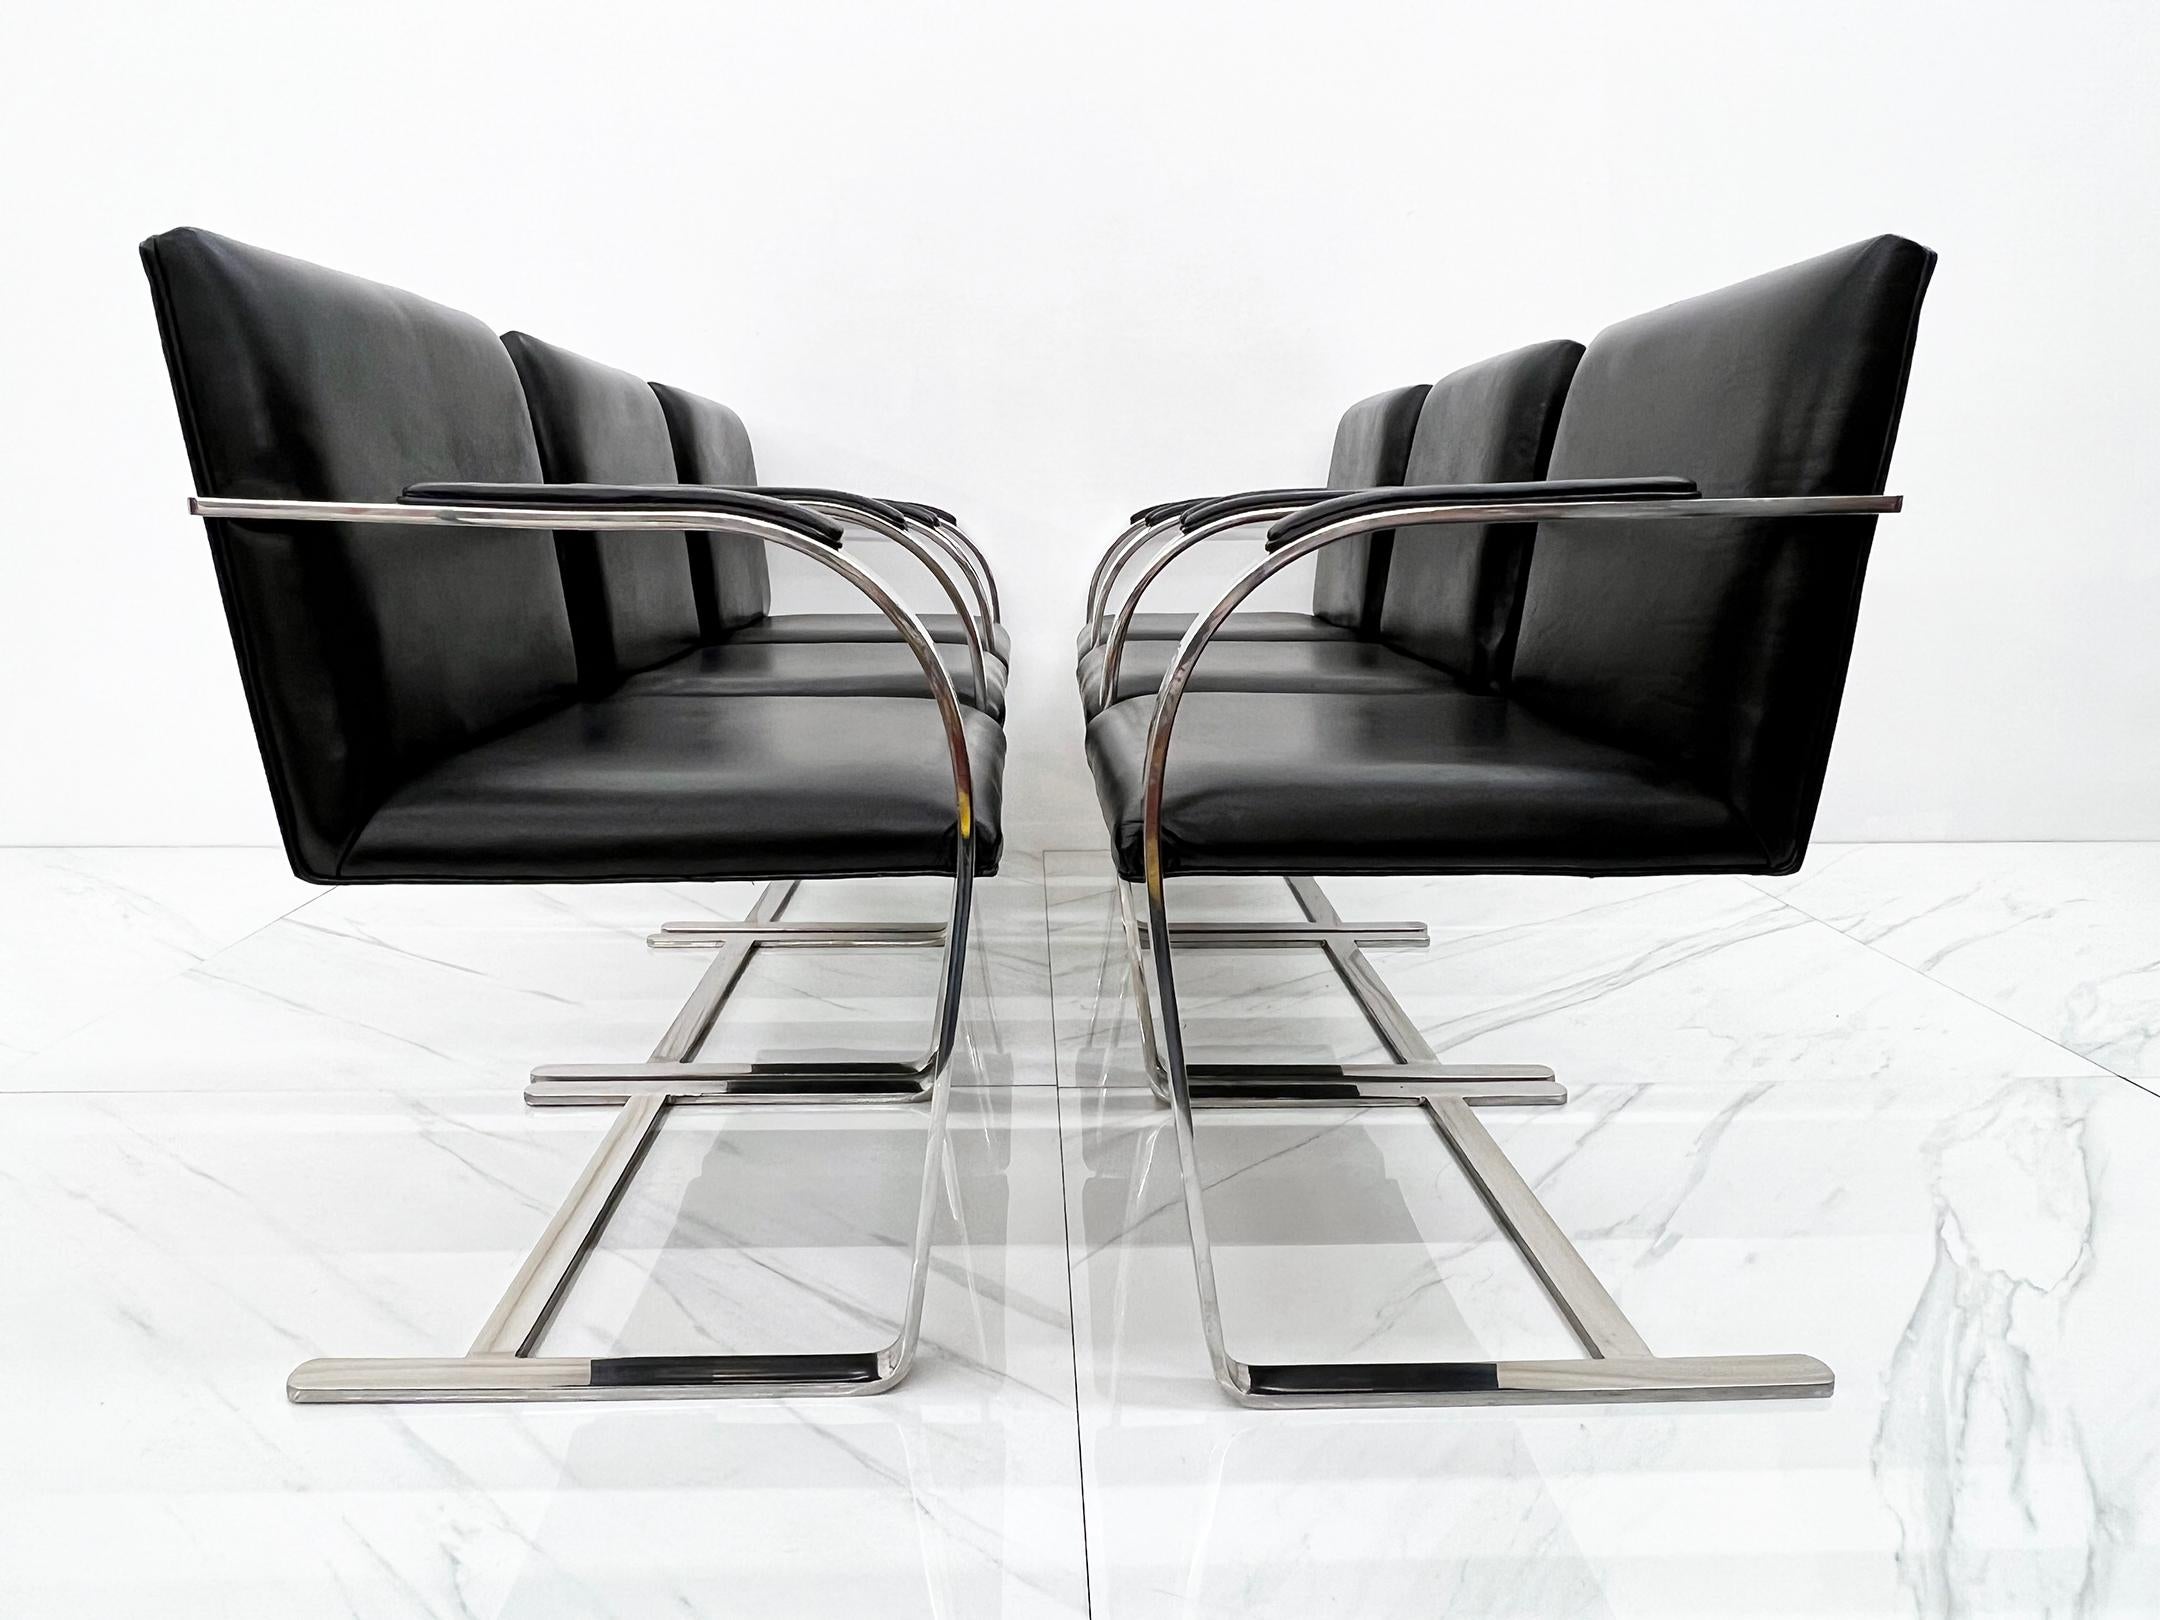 Intemporel et classique. Conçues par Ludwig Mies van der Rohe en 1930, ces chaises sont comme George Clooney : elles s'améliorent avec l'âge et semblent indémodables.

Cet ensemble spécifique, datant des années 1980, est recouvert d'un magnifique